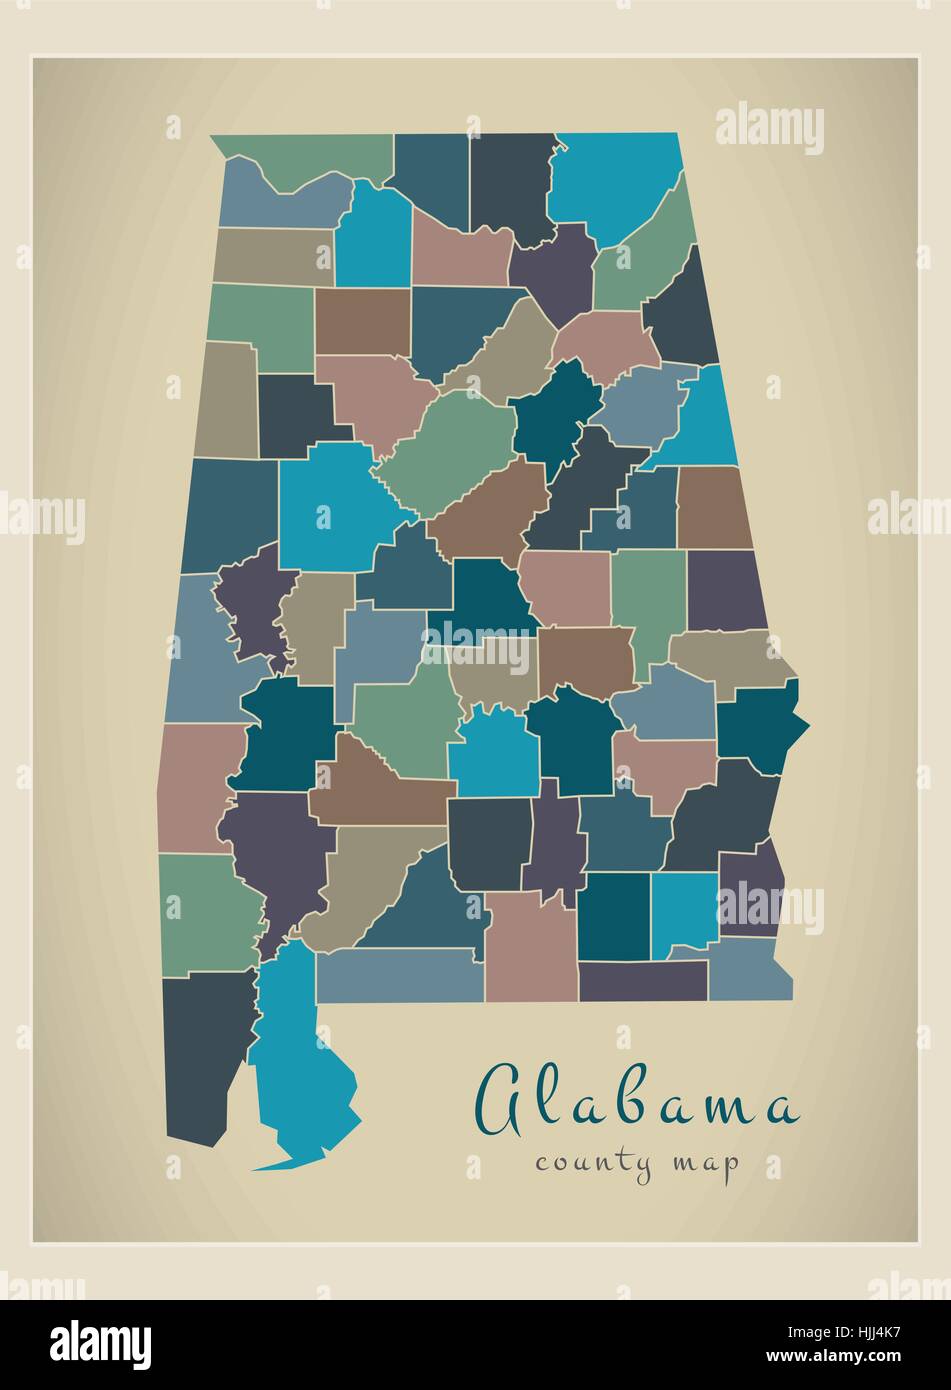 Mappa moderno - Alabama colorata mappa county USA silhouette illustrazione Illustrazione Vettoriale